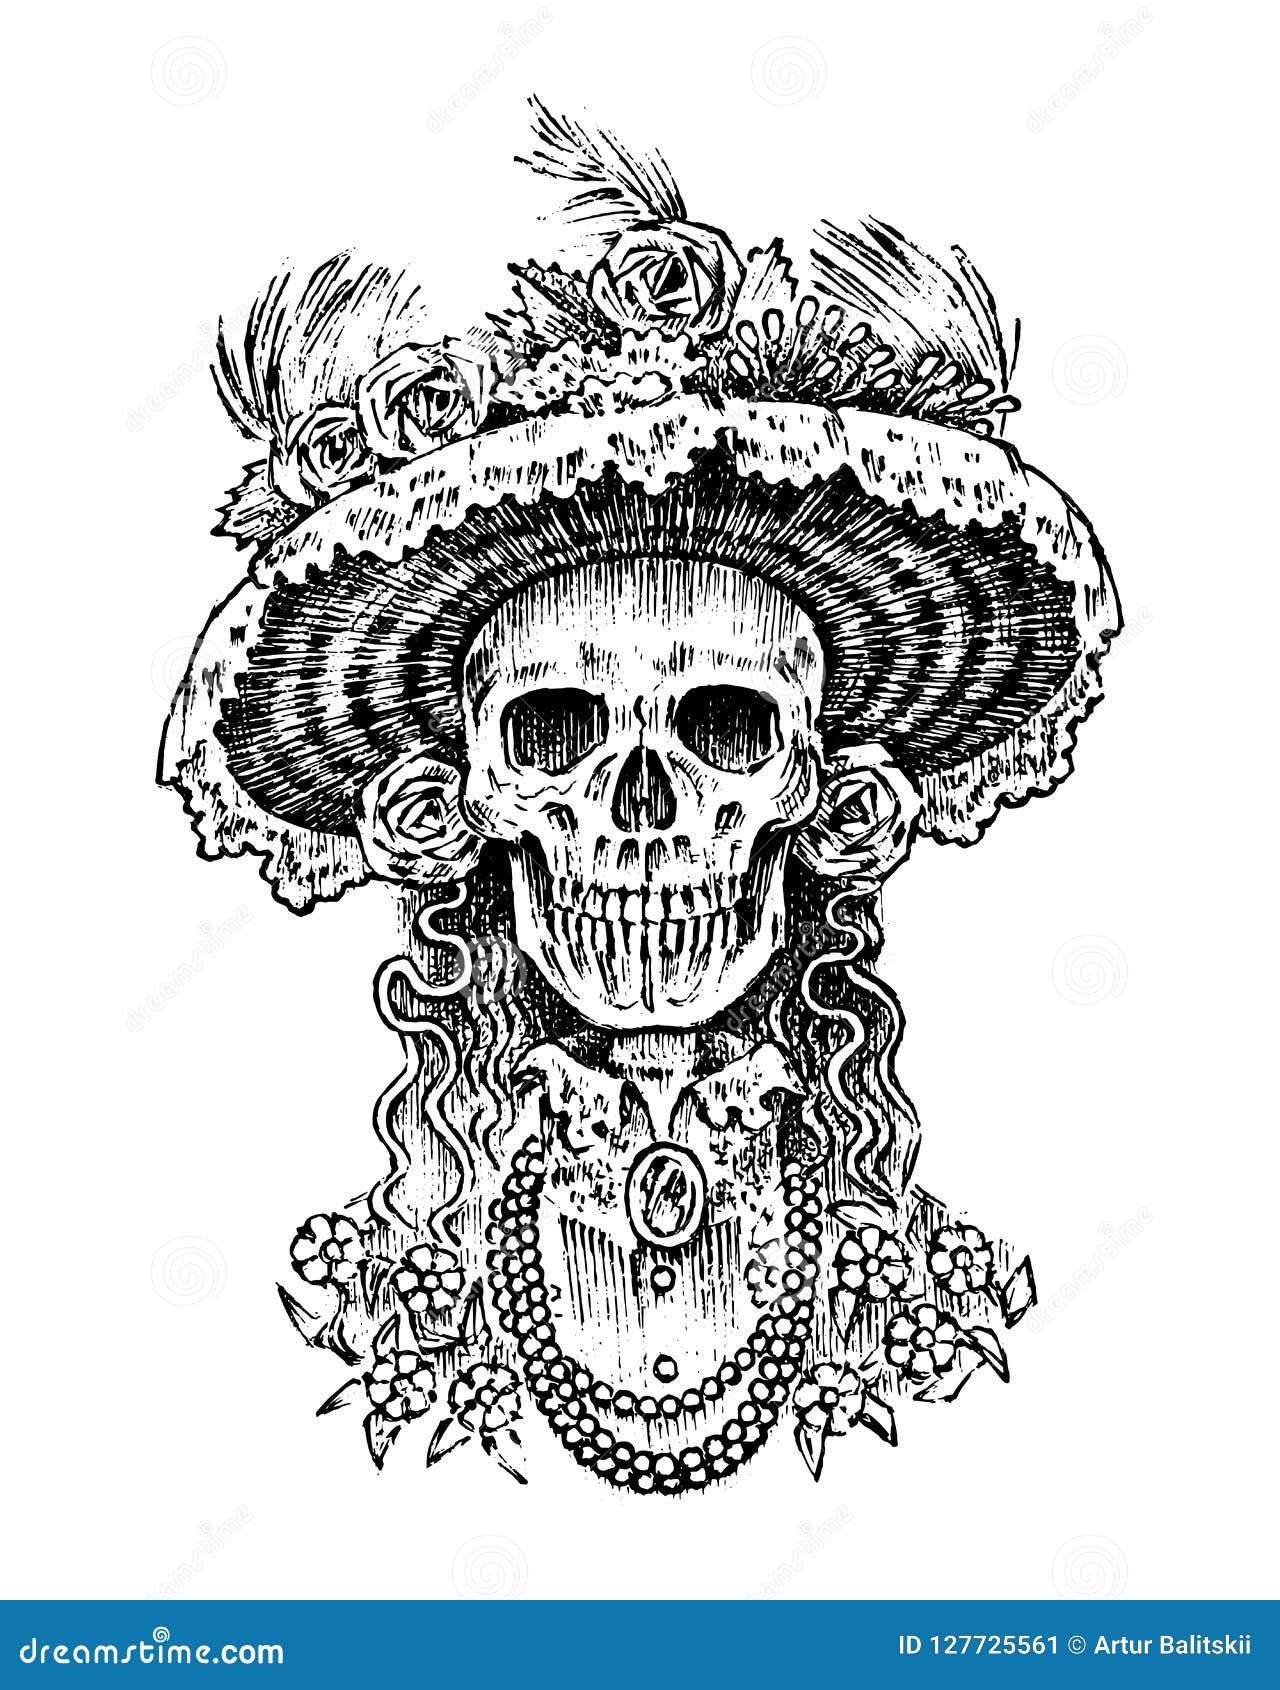 la calavera catrina. elegant woman skeleton. day of the dead. spanish dia de los muertos. mexican national holiday